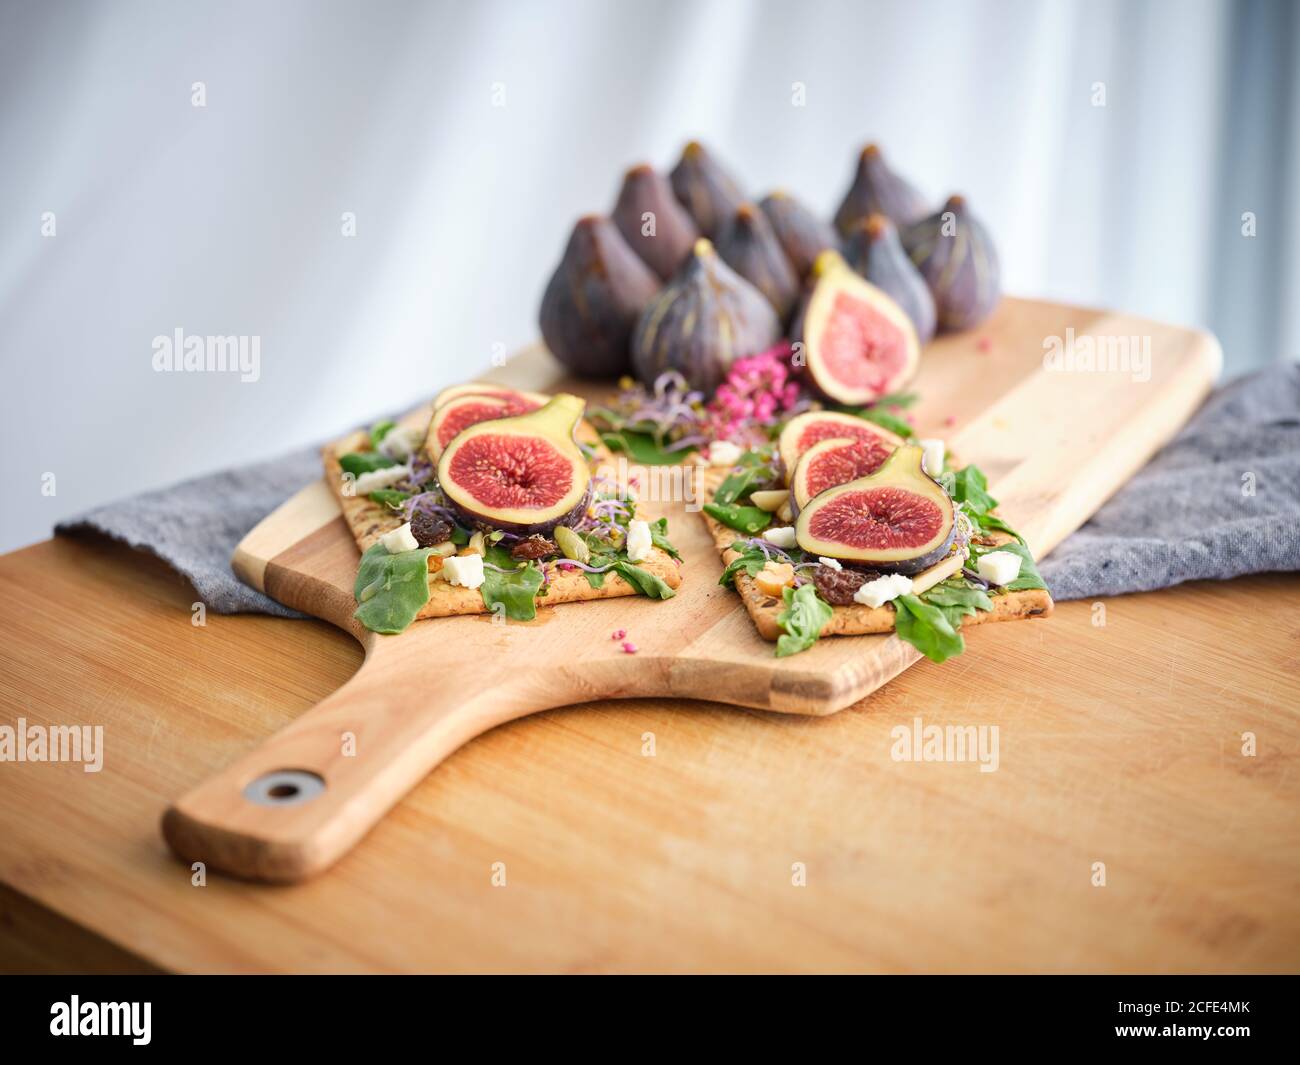 Délicieux sandwichs ouverts colorés faits maison avec des tranches de figues et morceaux de fromage sur du pain de seigle croustillant parmi le vert aromatique feuilles de roquette et fleurs roses Banque D'Images